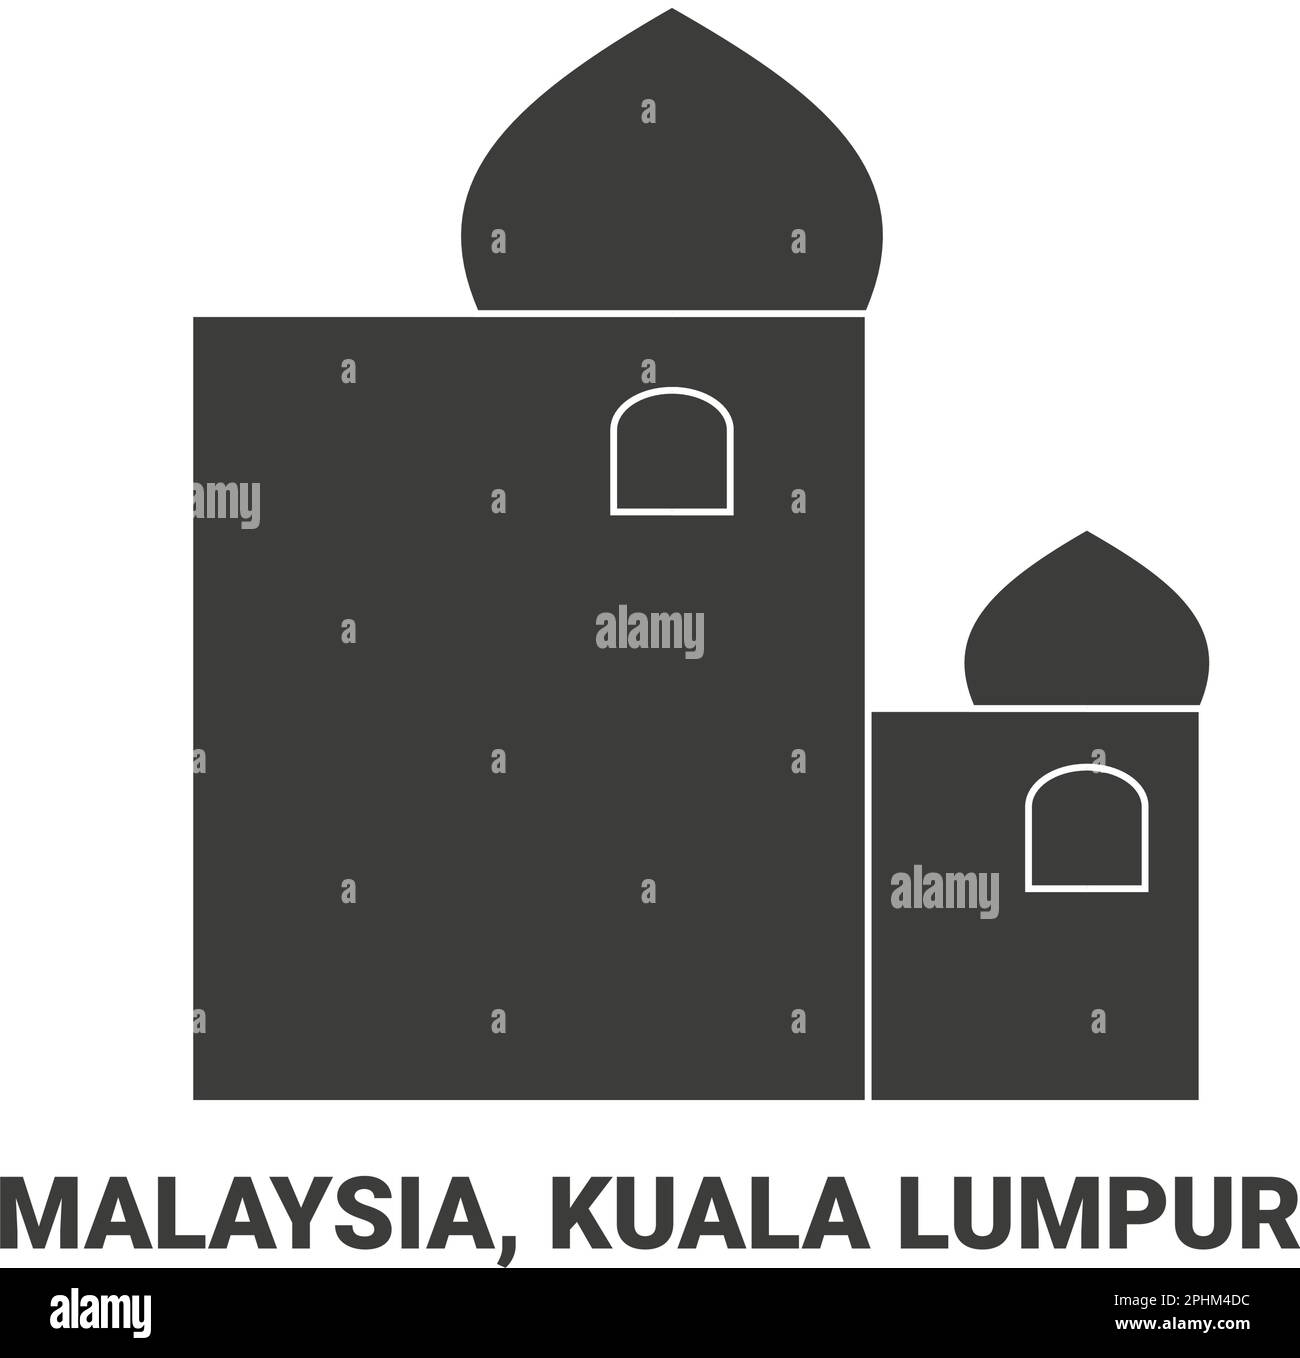 Malaysia, Kuala Lumpur, travel landmark vector illustration Stock Vector